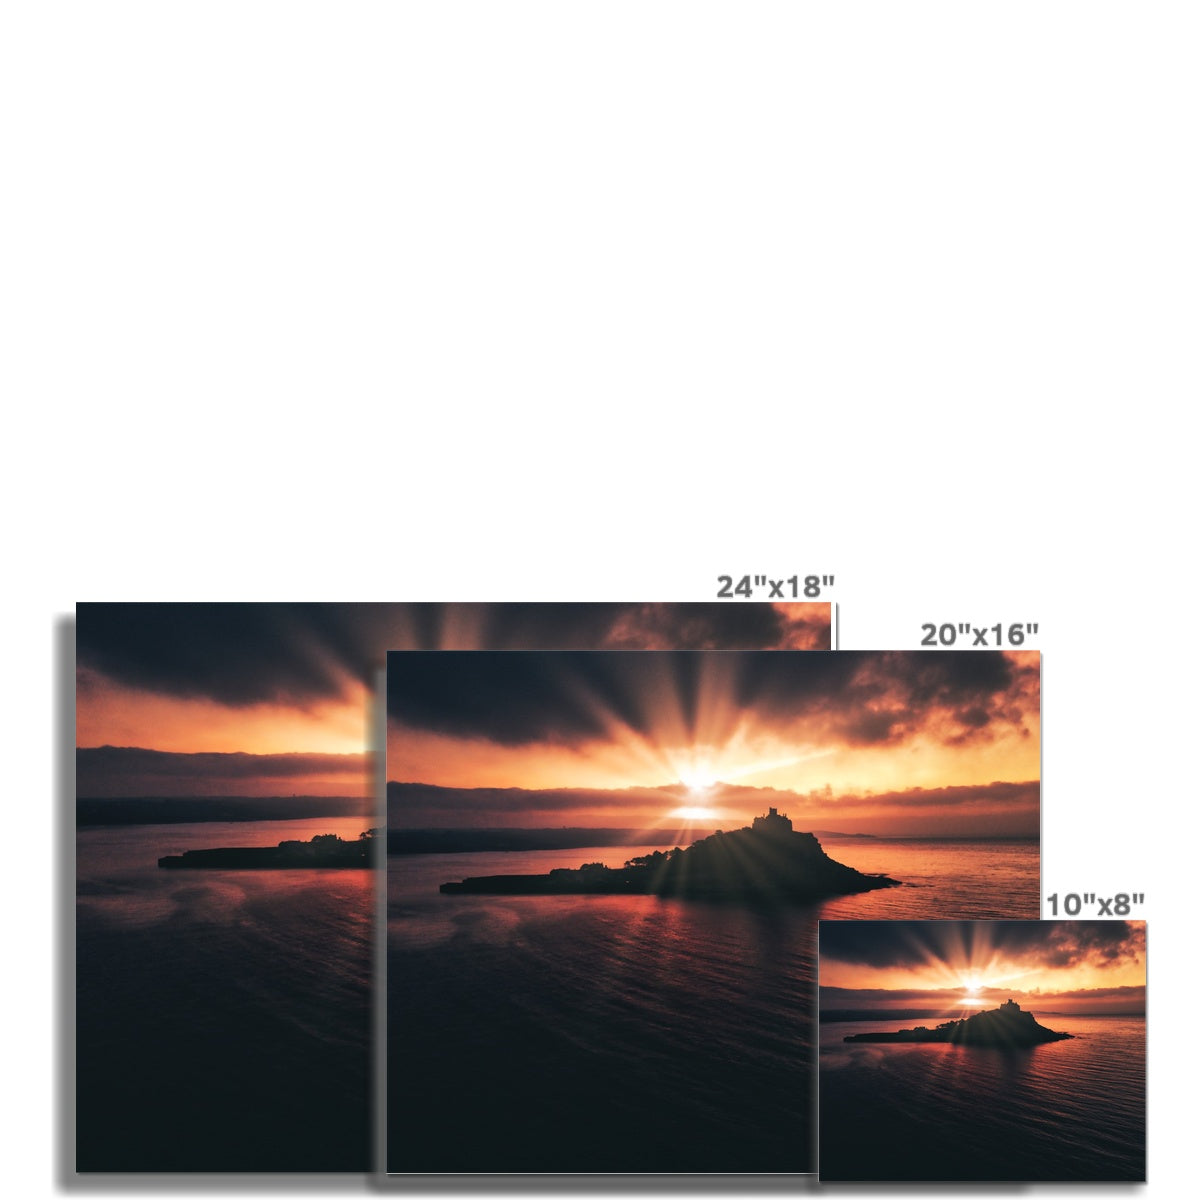 st michaels mount sunrise picture sizes